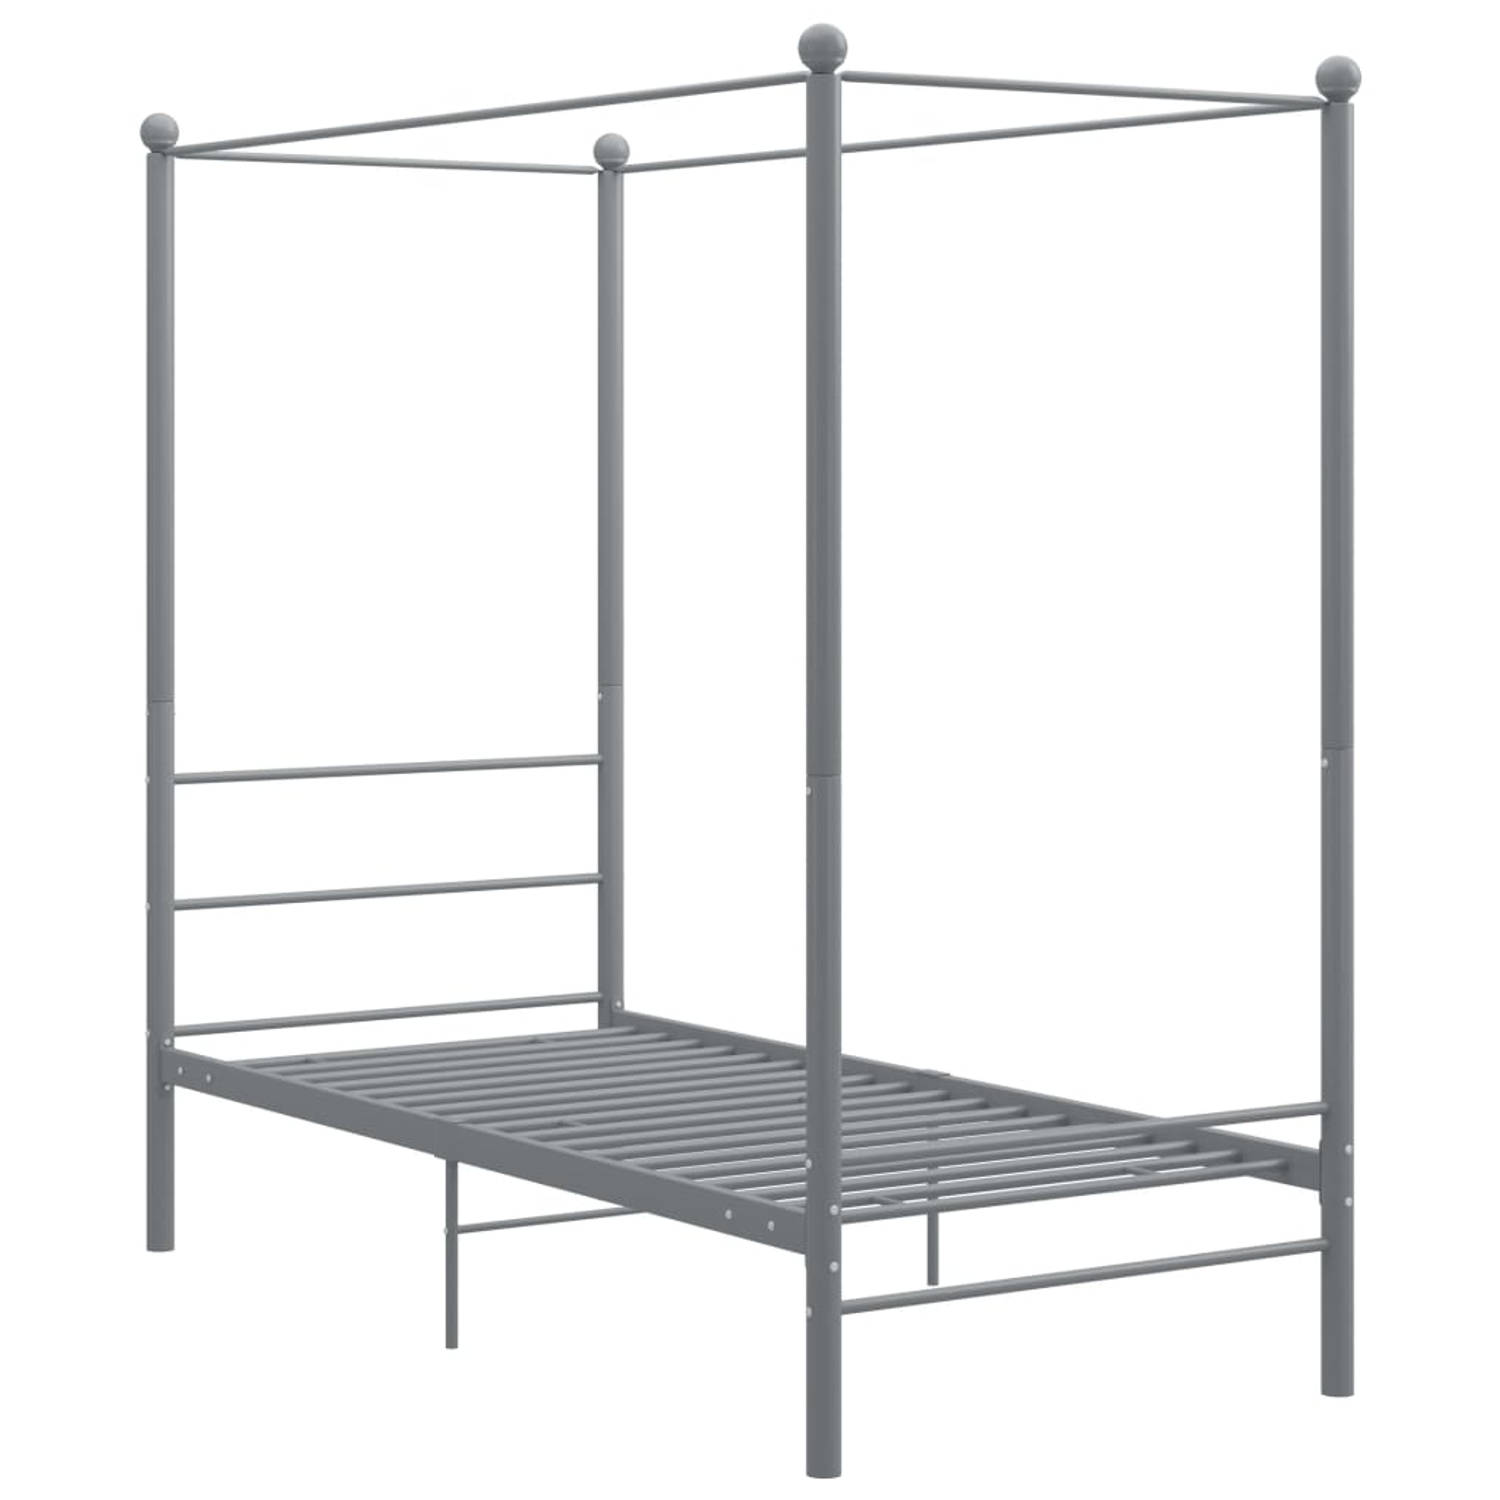 The Living Store Hemelbedframe metaal grijs 100x200 cm - Bedframe - Bedframe - Bed Frame - Bed Frames - Bed - Bedden - Metalen Bedframe - Metalen Bedframes - 1-persoonsbed - 1